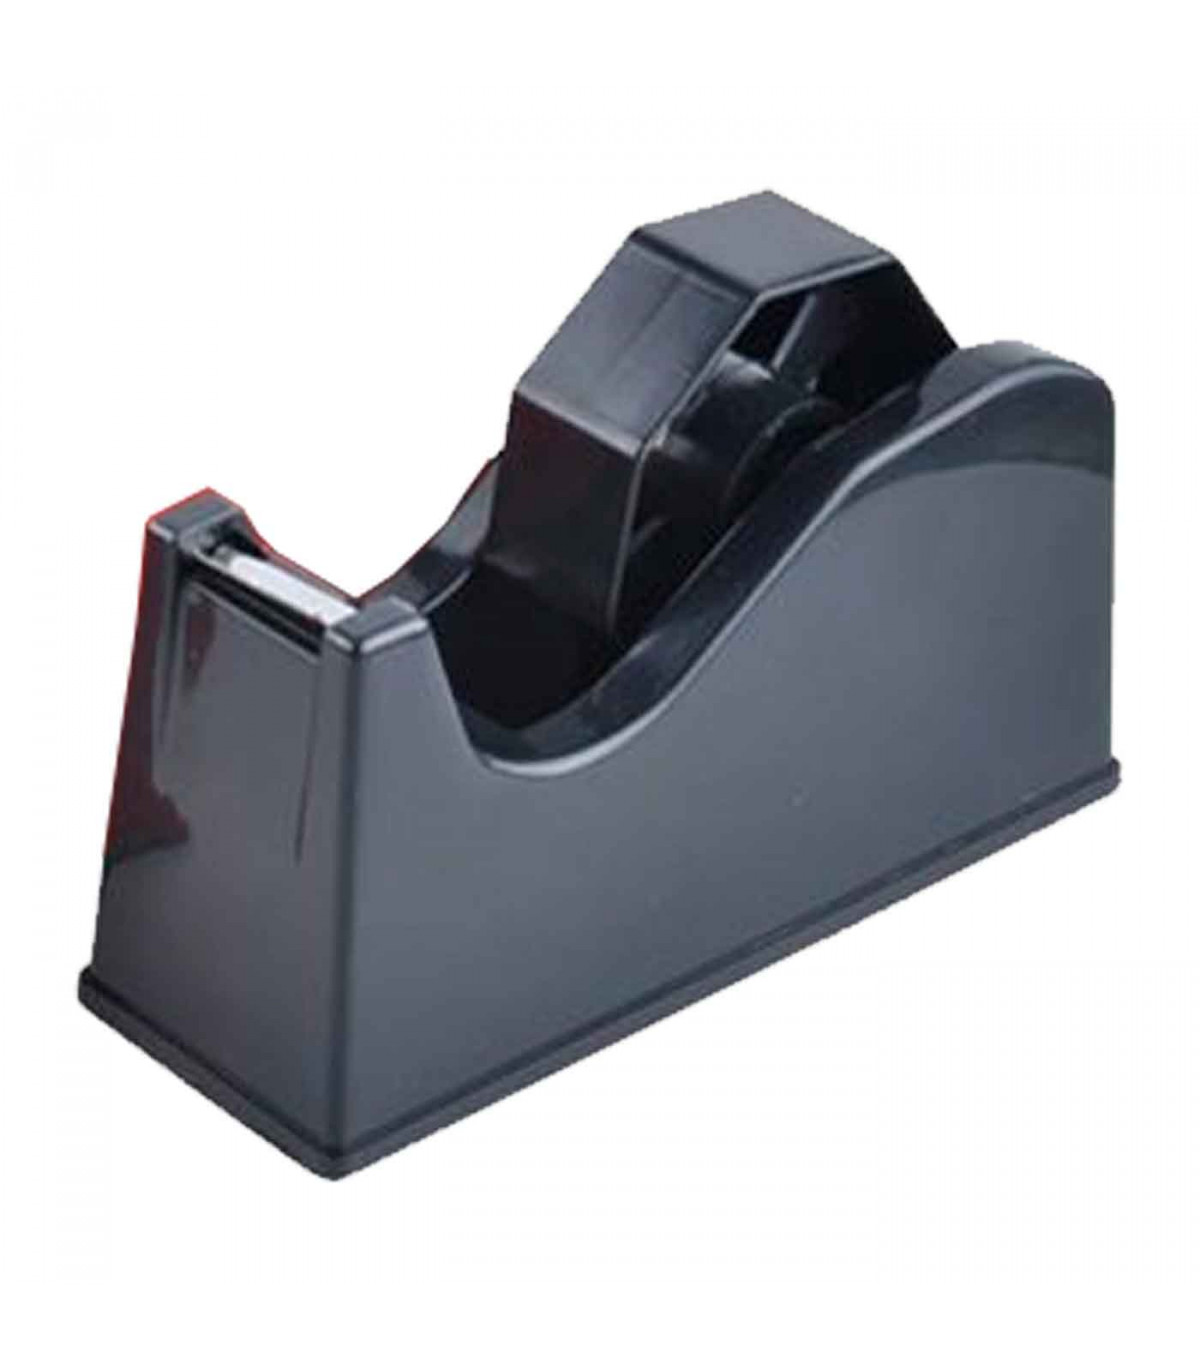 Tradineur - Porta celo grande - Fabricado en plástico PVC - Base  antideslizante - Máximo de cinta 25 mm. - 11 x 7 x 21 cm - Colo